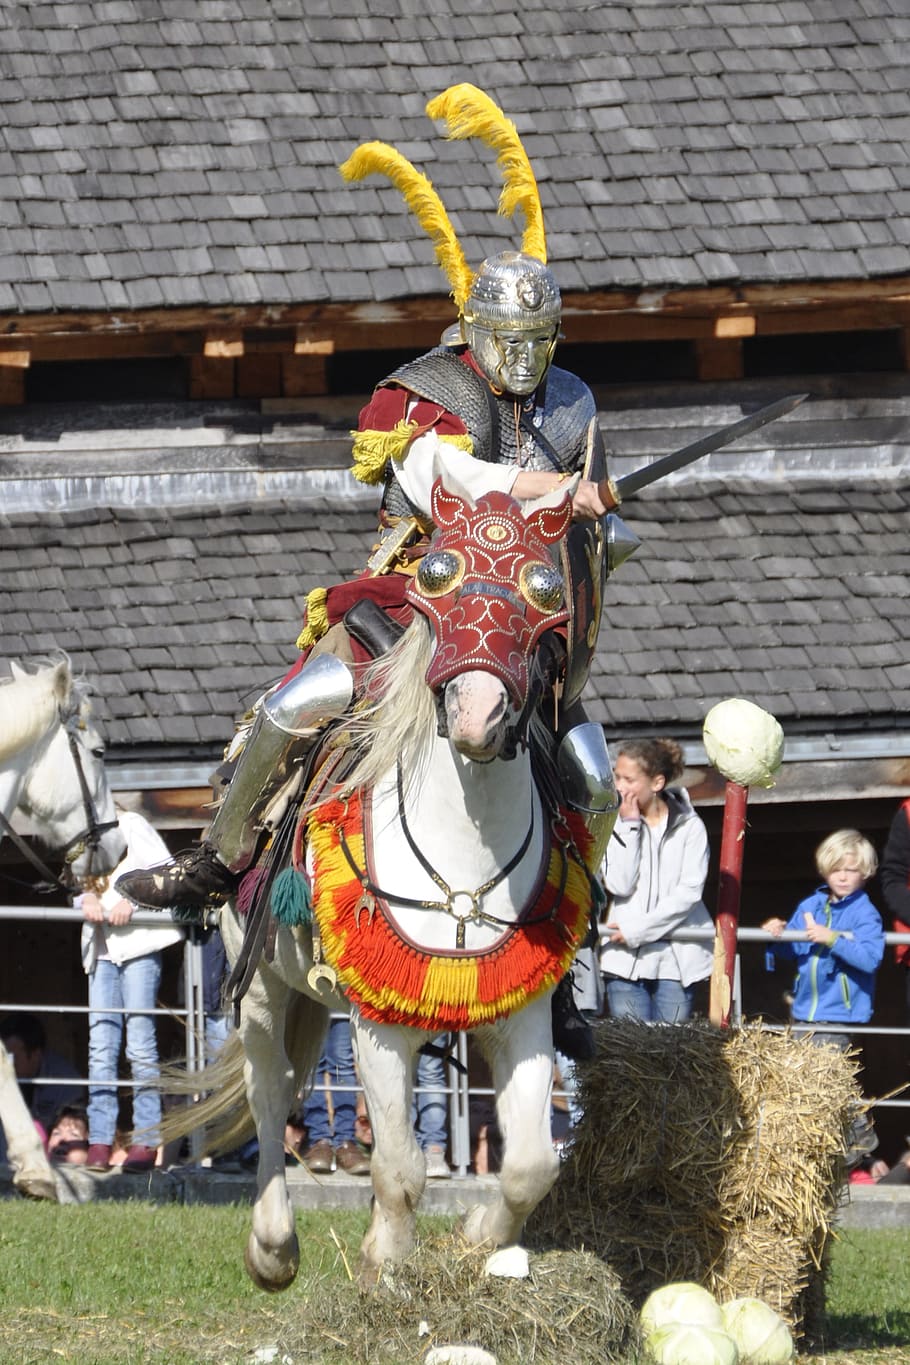 Romanos, Reiter, Cavalaria, Luta, Cavalo, cavaleiro - Pessoa, culturas, roupas tradicionais, Festival tradicional, armadura